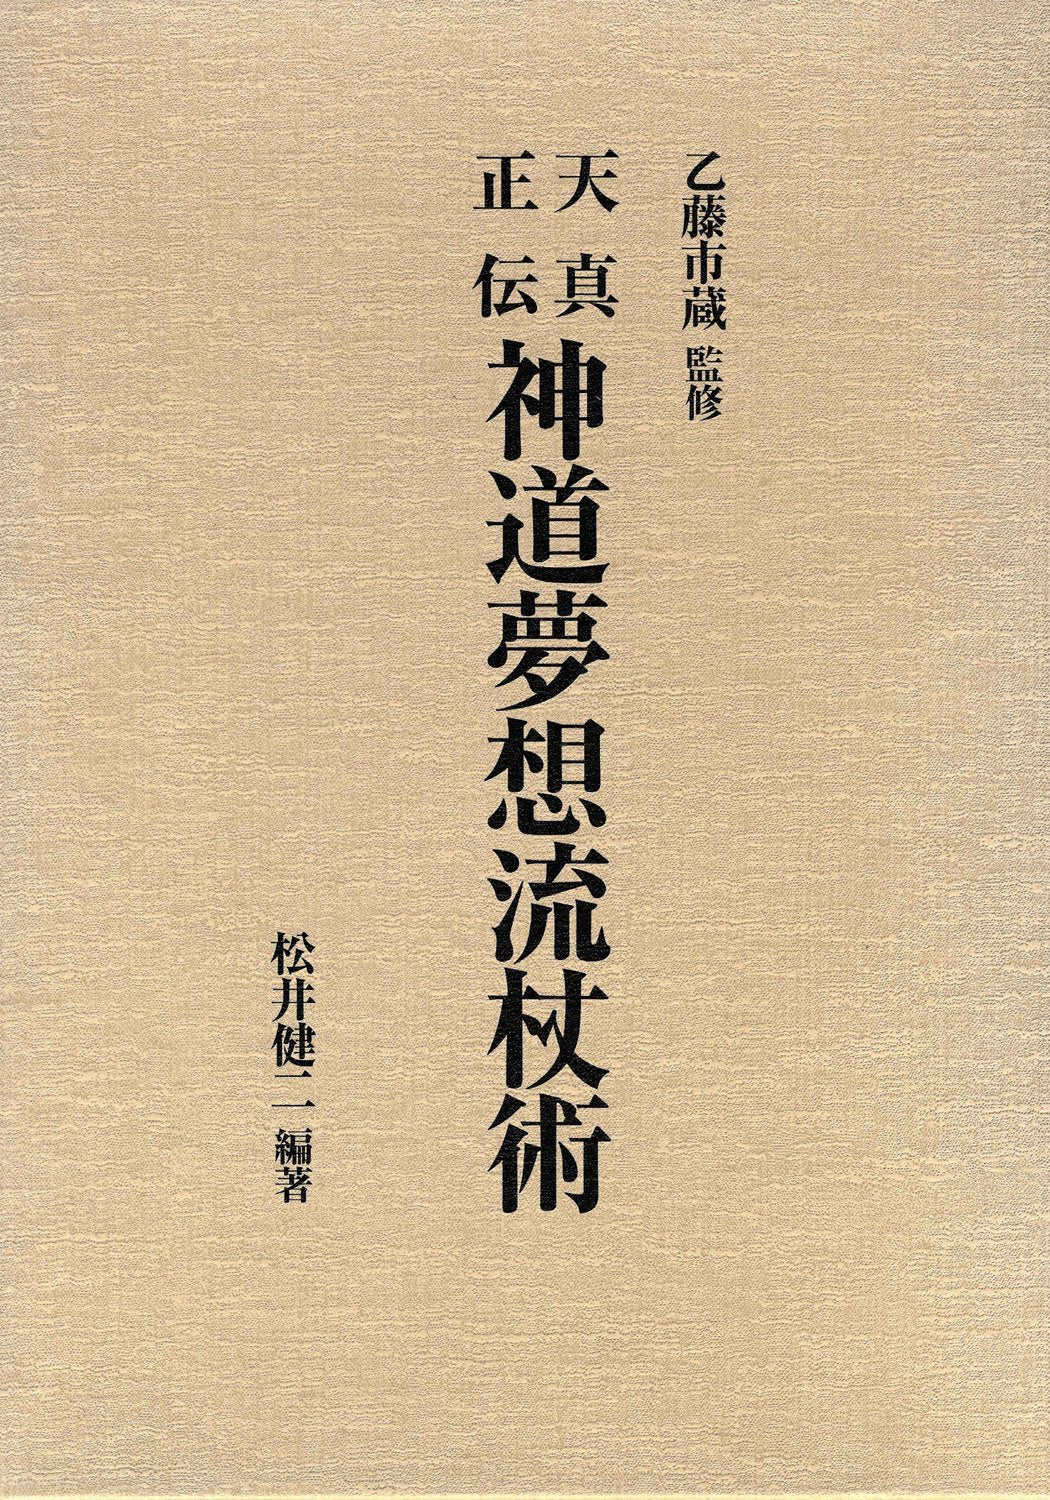 Tenshin Shoden Shinto Muso Ryu Jojutsu (Hardcover) Book by Kenji Matsui (Preowned) - Budovideos